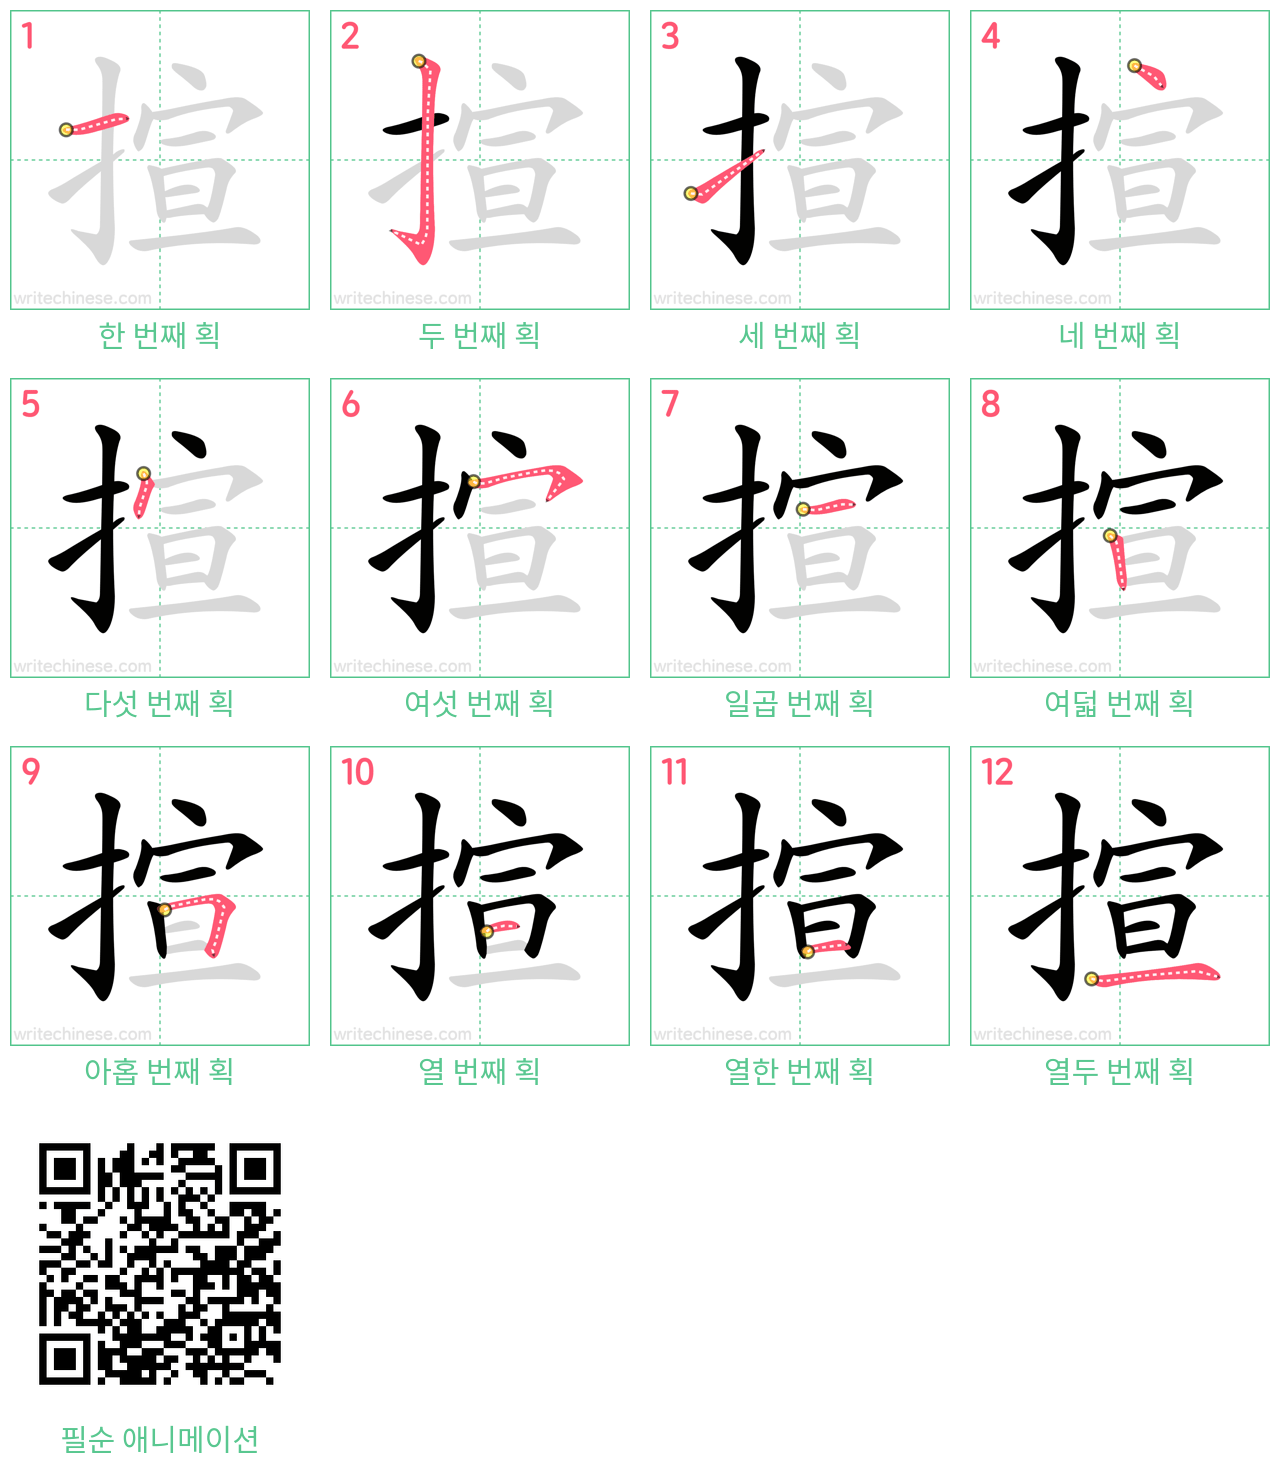 揎 step-by-step stroke order diagrams